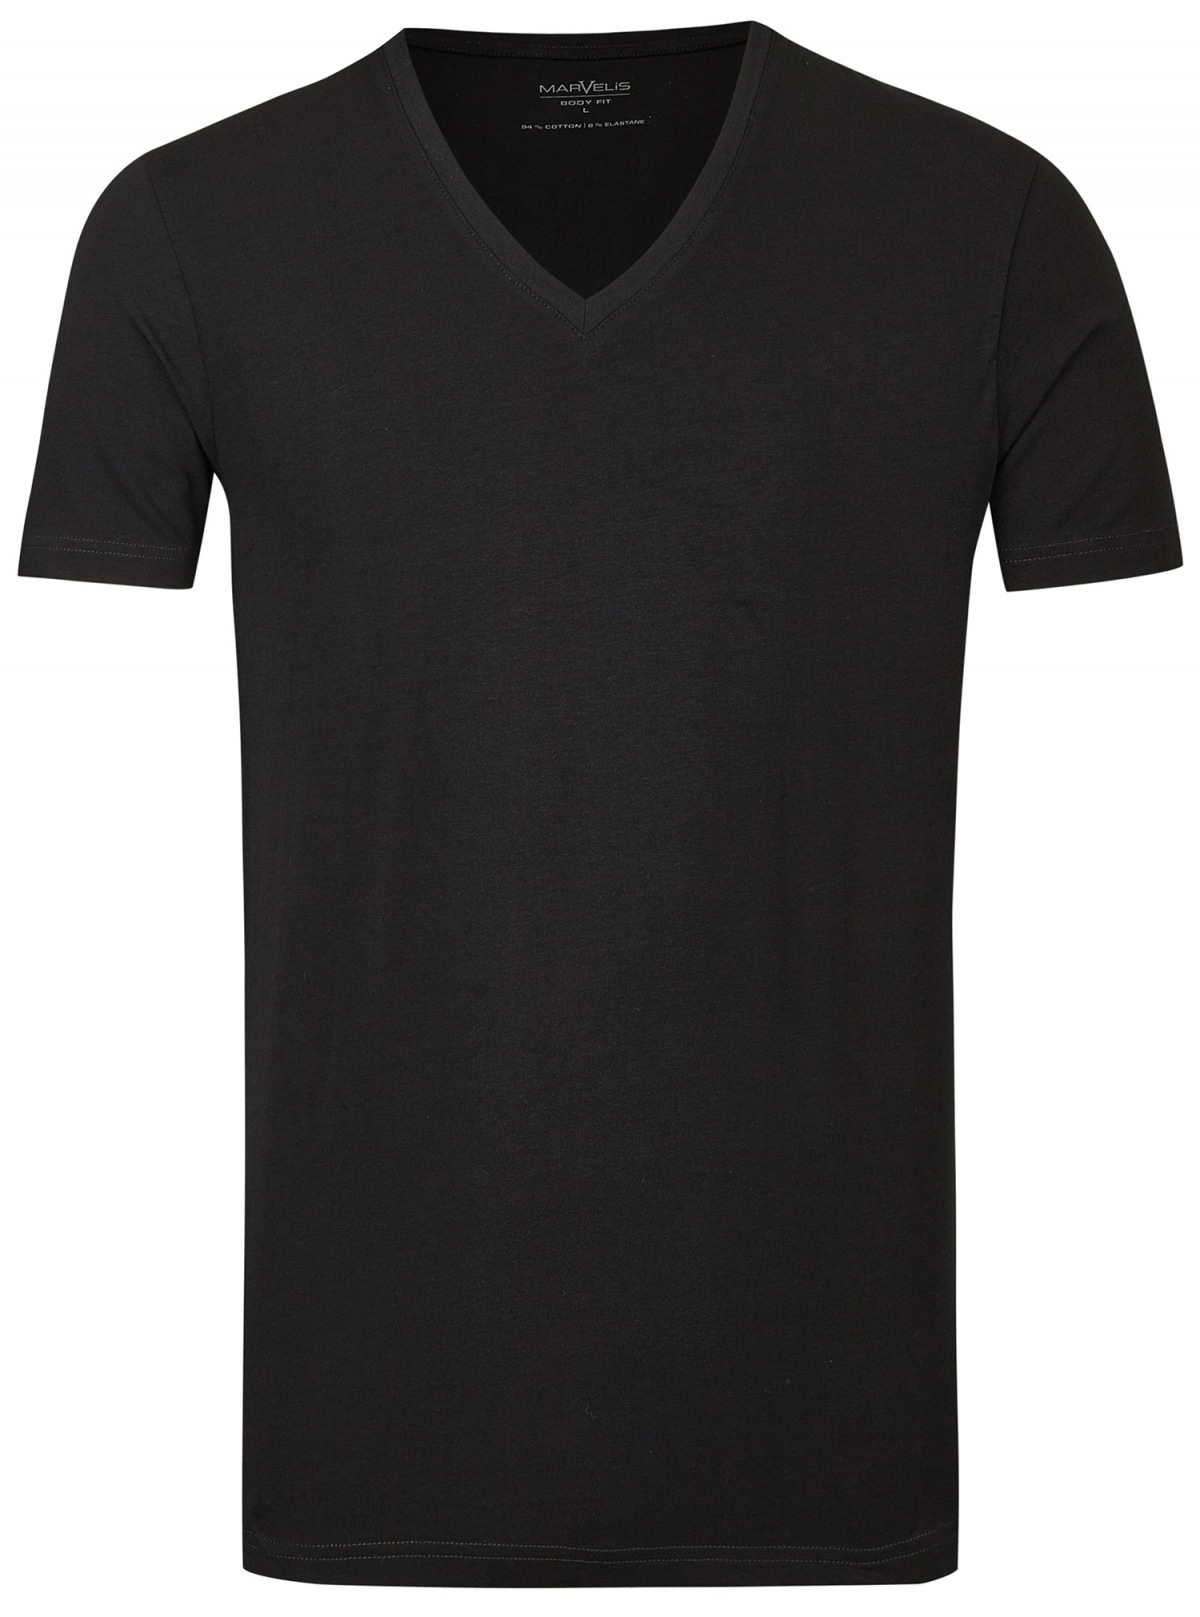 Marvelis T-Shirt Doppelpack Body Fit V-Ausschnitt schwarz Baumwolle 